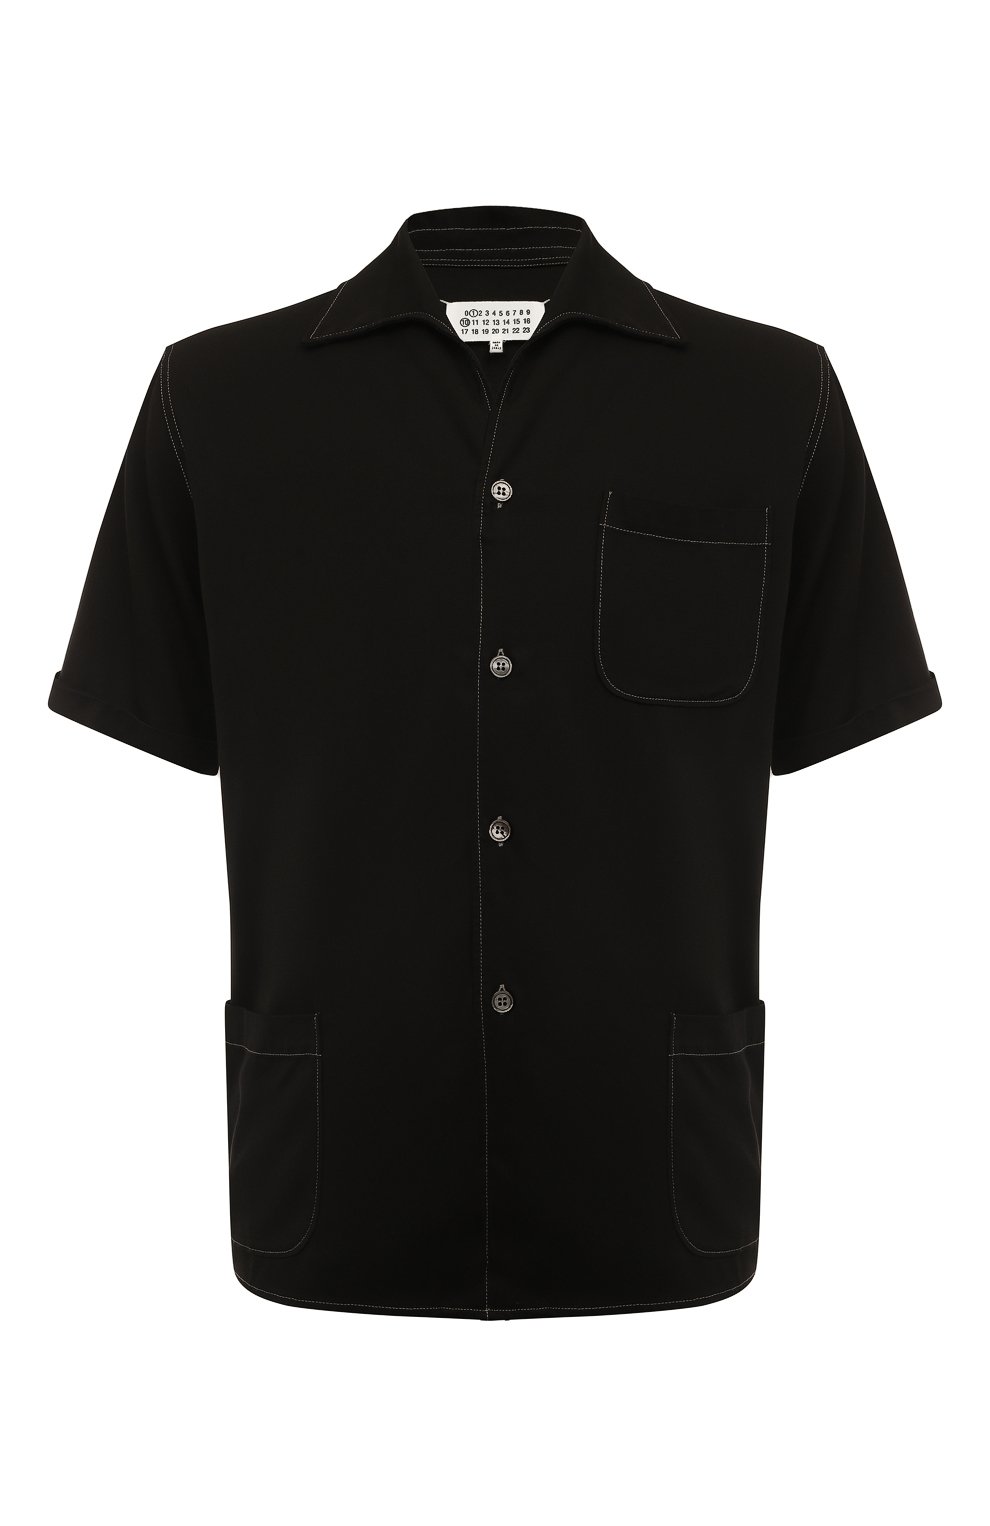 Рубашки Maison Margiela, Рубашка из вискозы Maison Margiela, Италия, Чёрный, Вискоза: 85%; Полиэстер: 15%;, 13365585  - купить